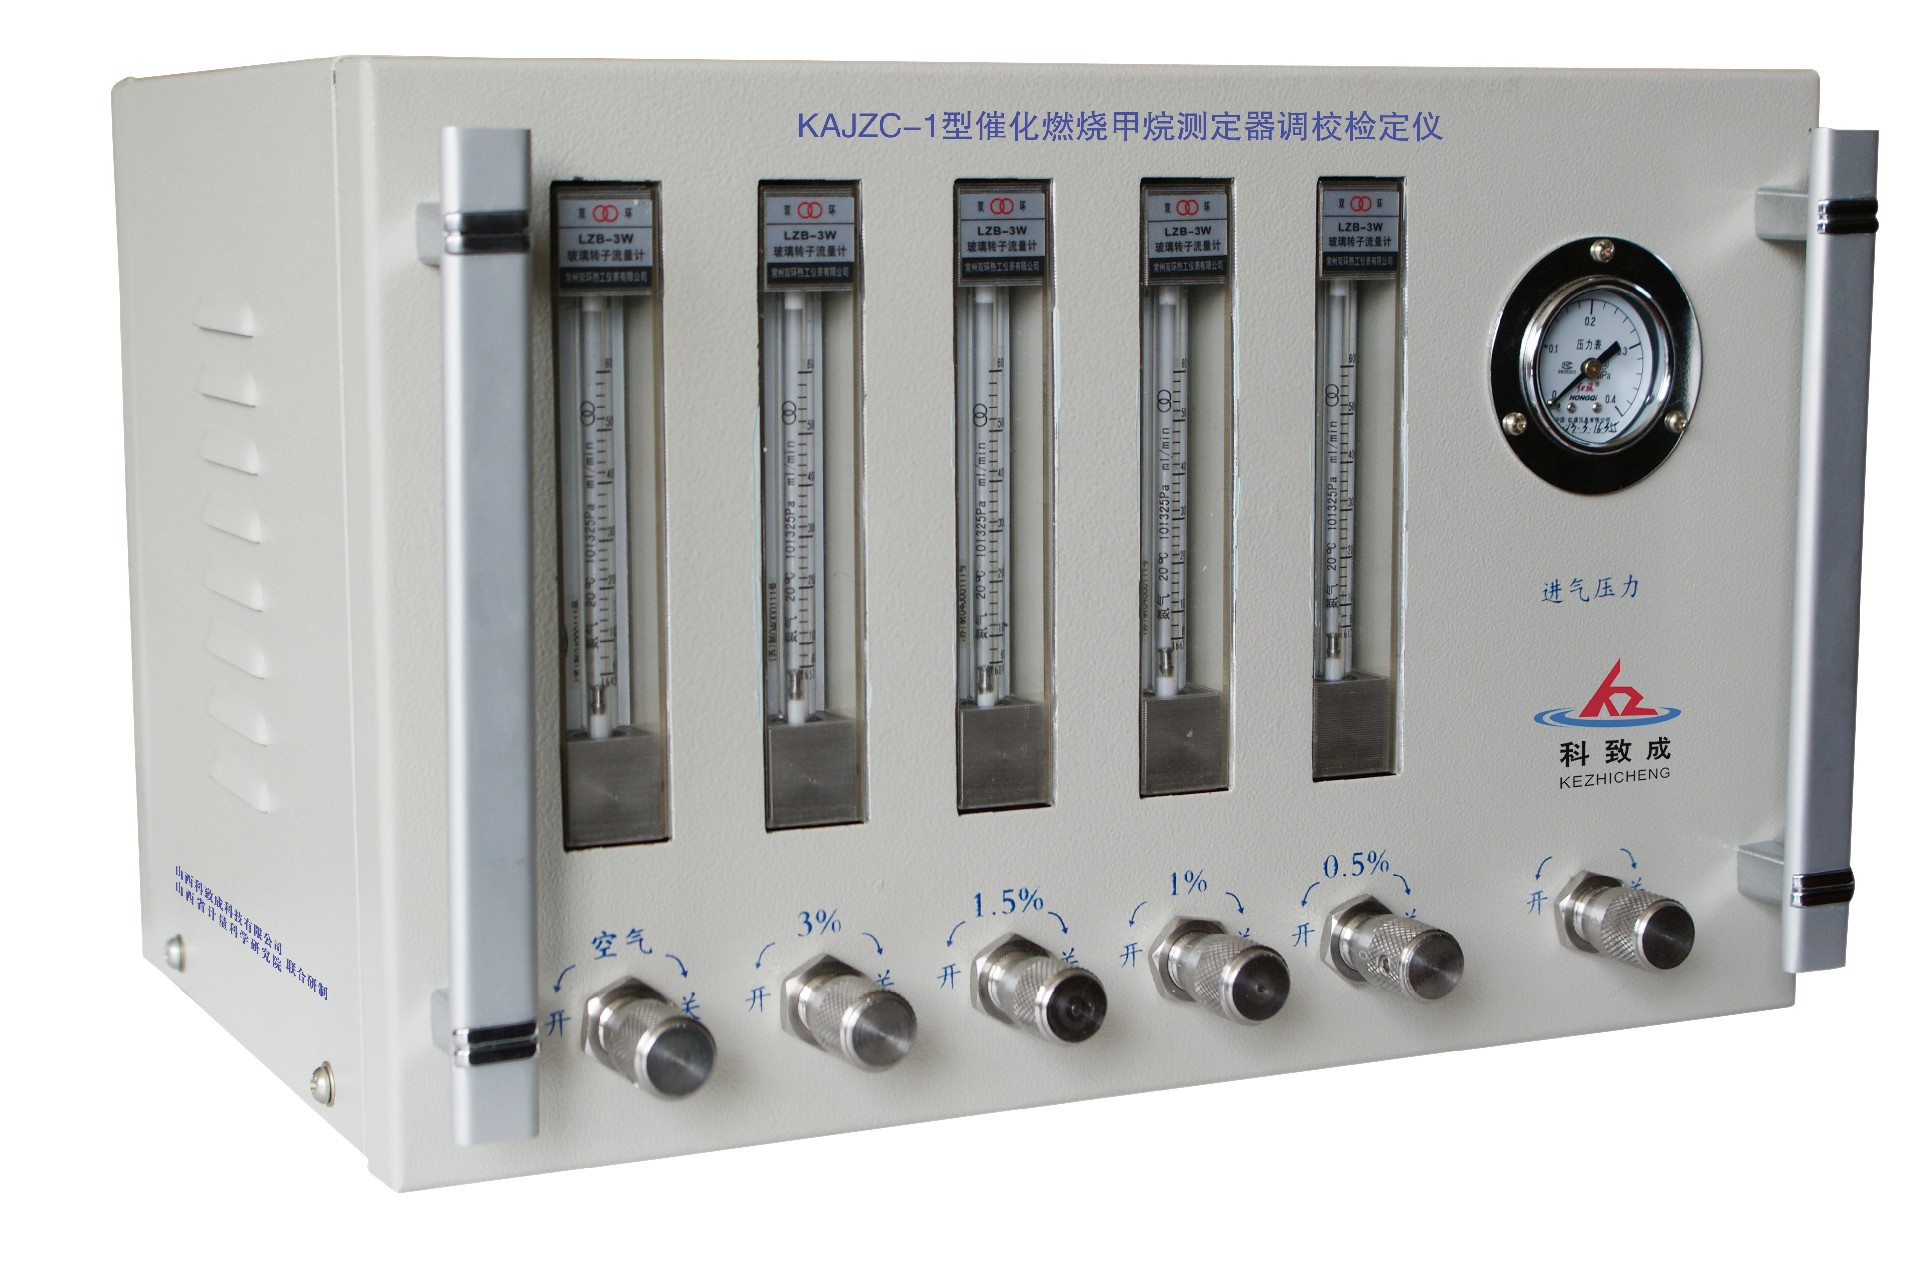 保定KAJZC-1型催化燃烧甲烷测定器调校检定仪